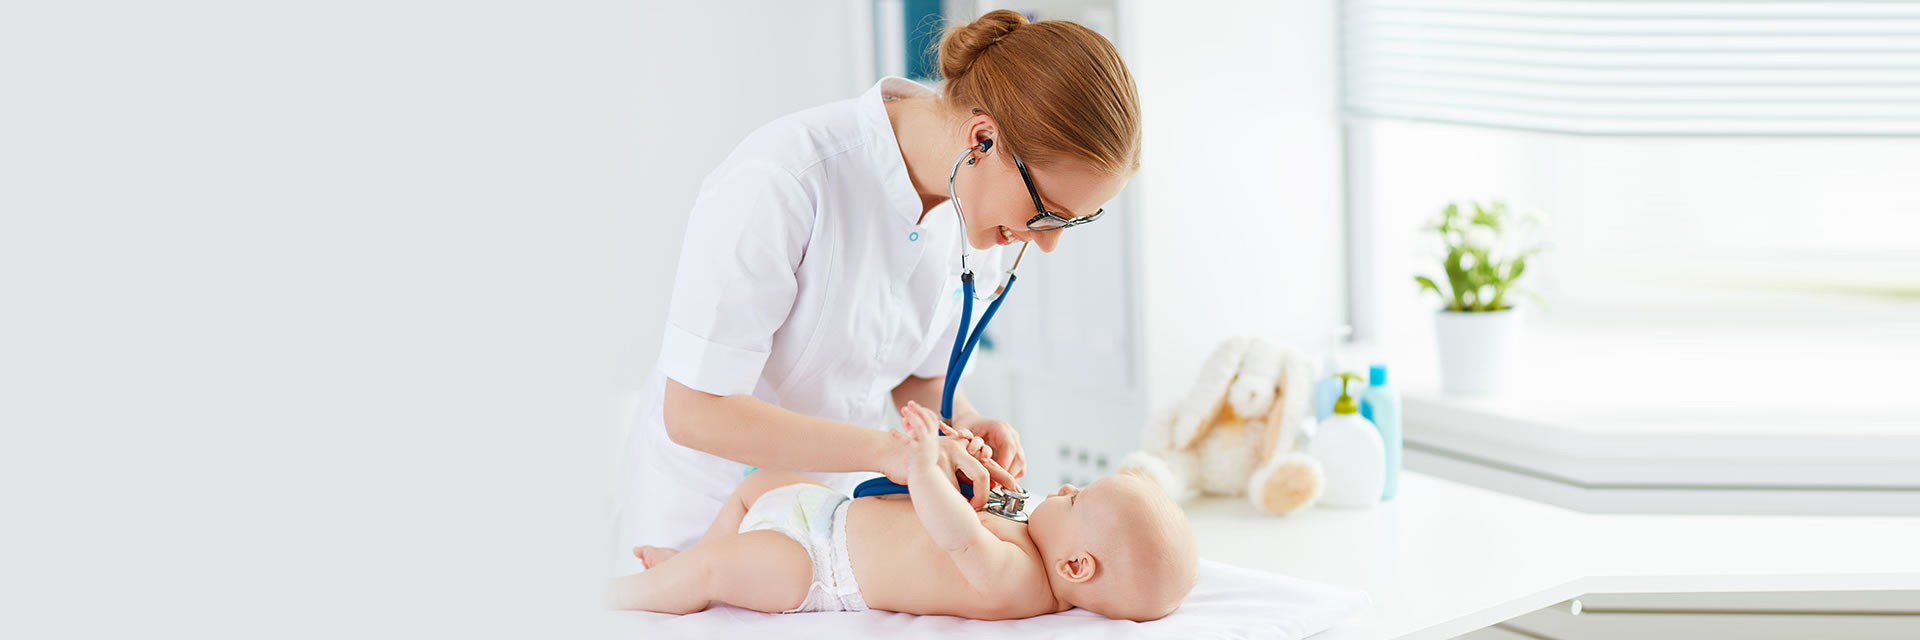 Nurse using Stethoscope on Baby